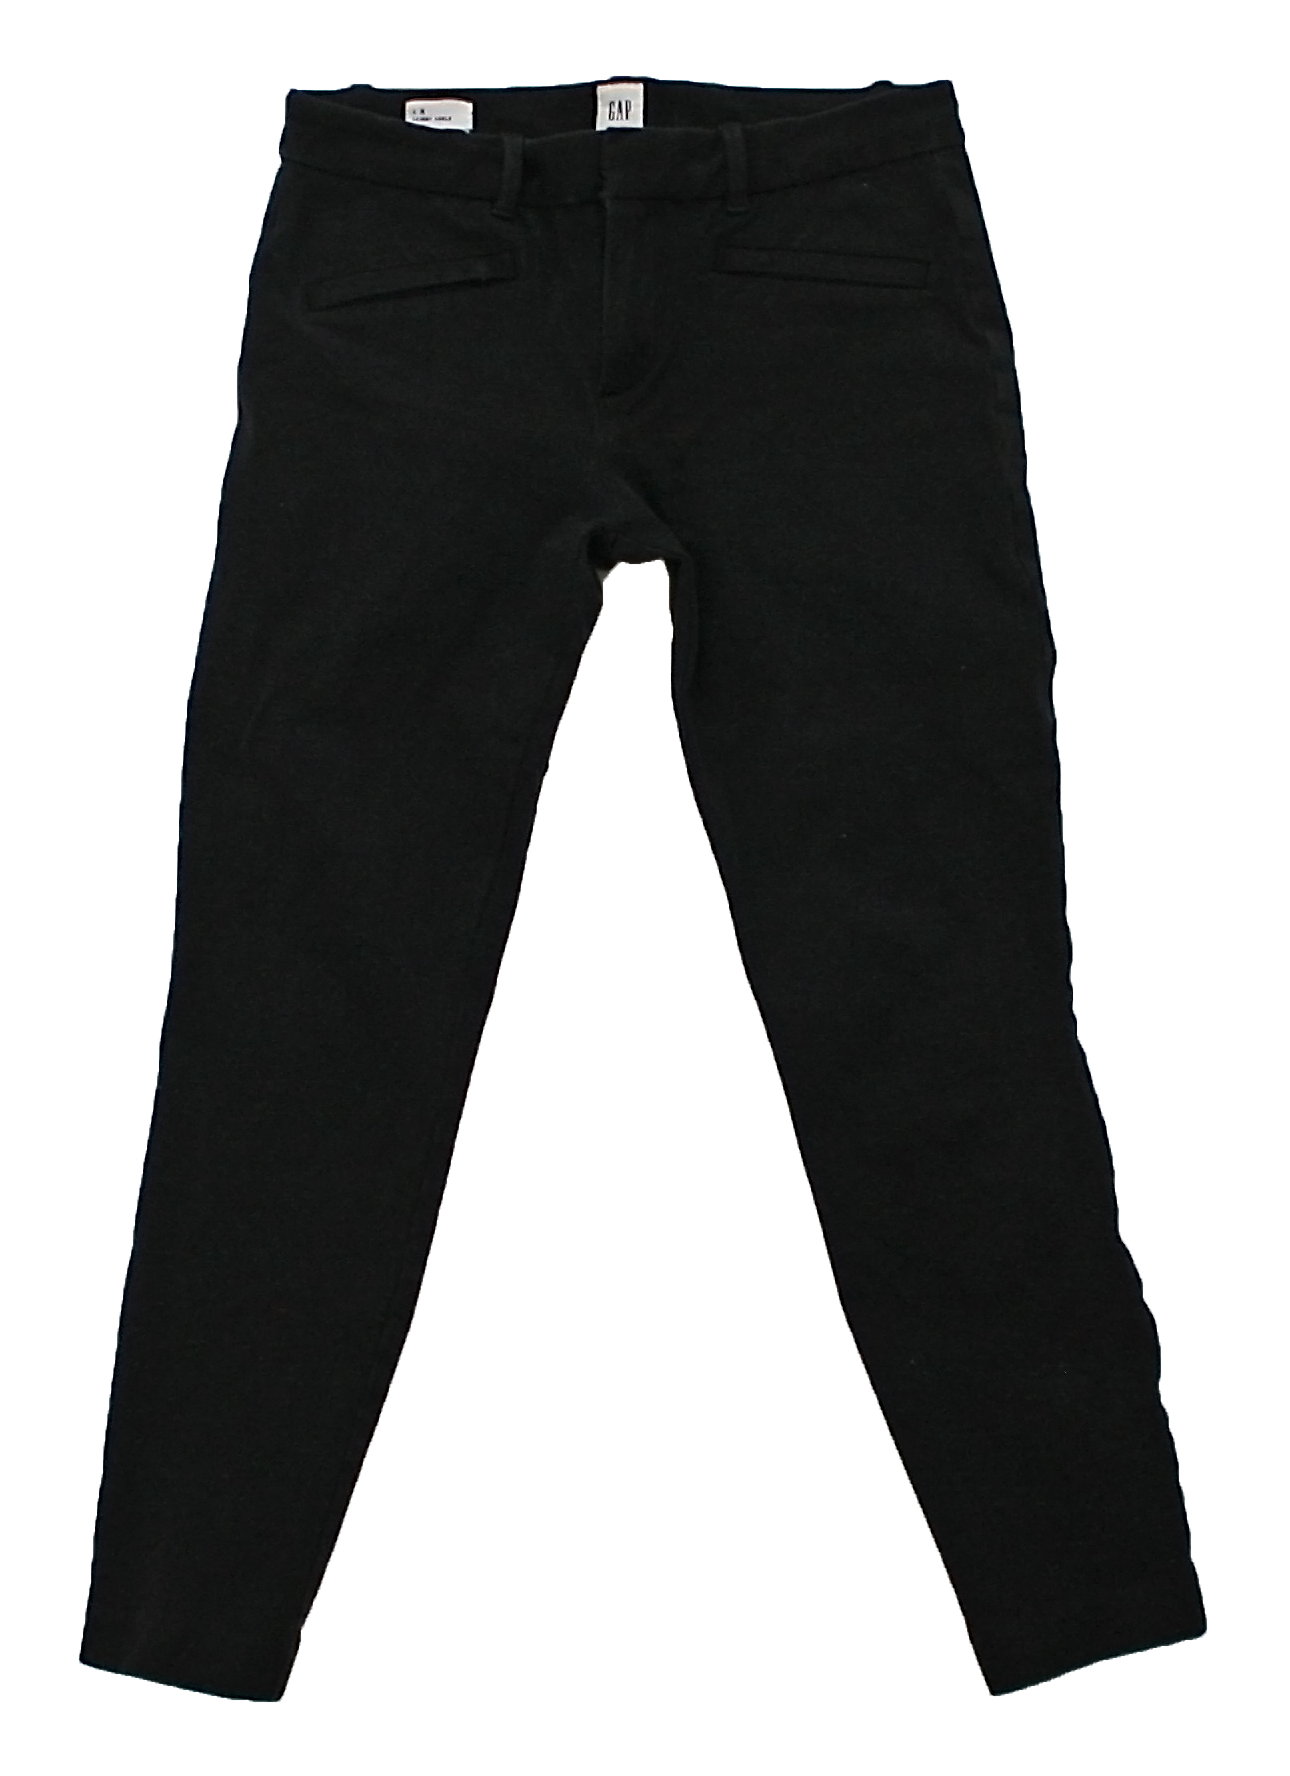 A pair of black slim pants from Gap